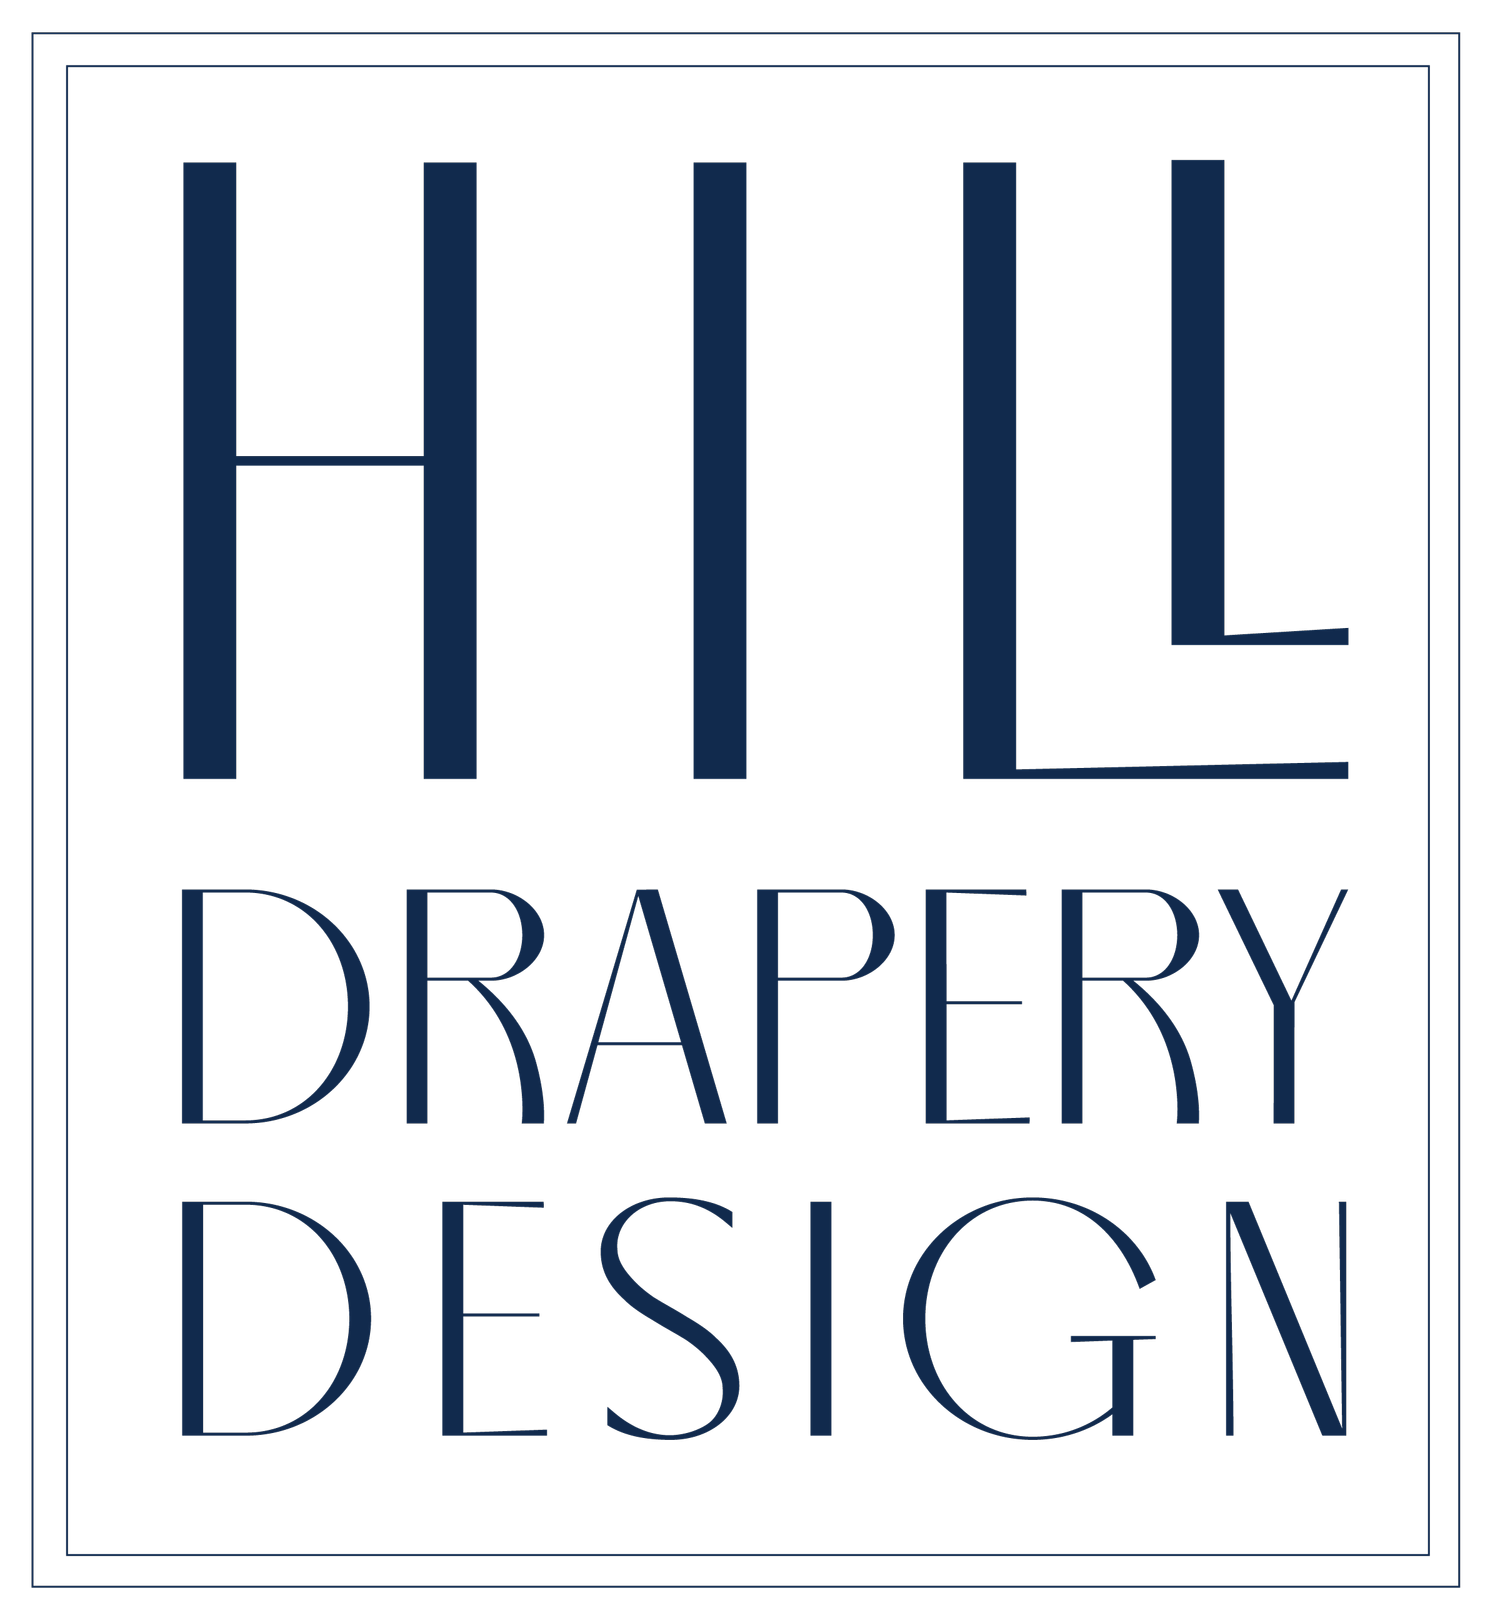 Hill Drapery Design